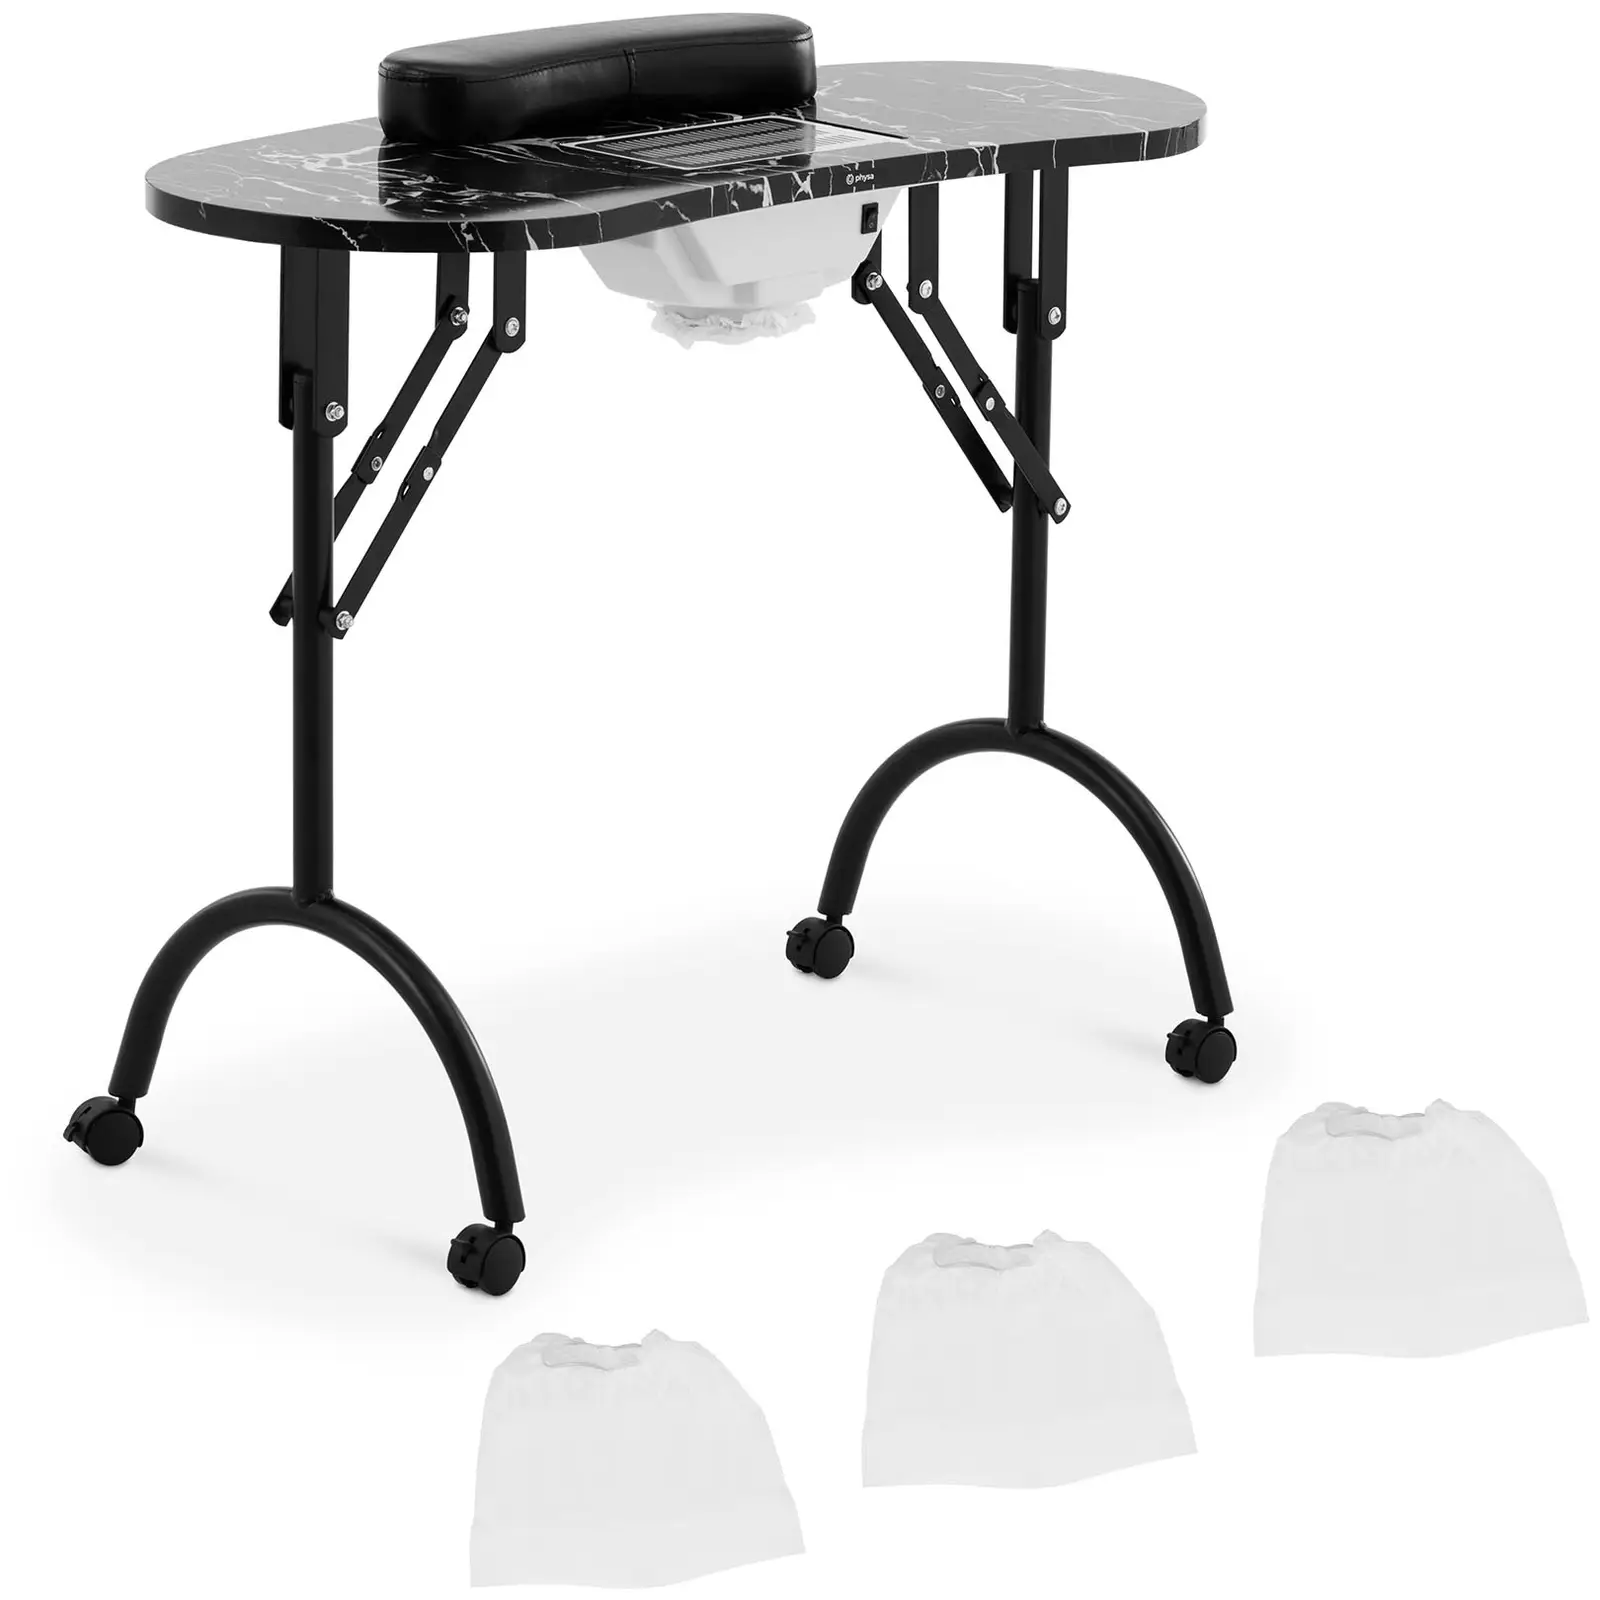 Manikiūro stalas - sulankstomas - juodas - 4 ratukai - ištraukimas